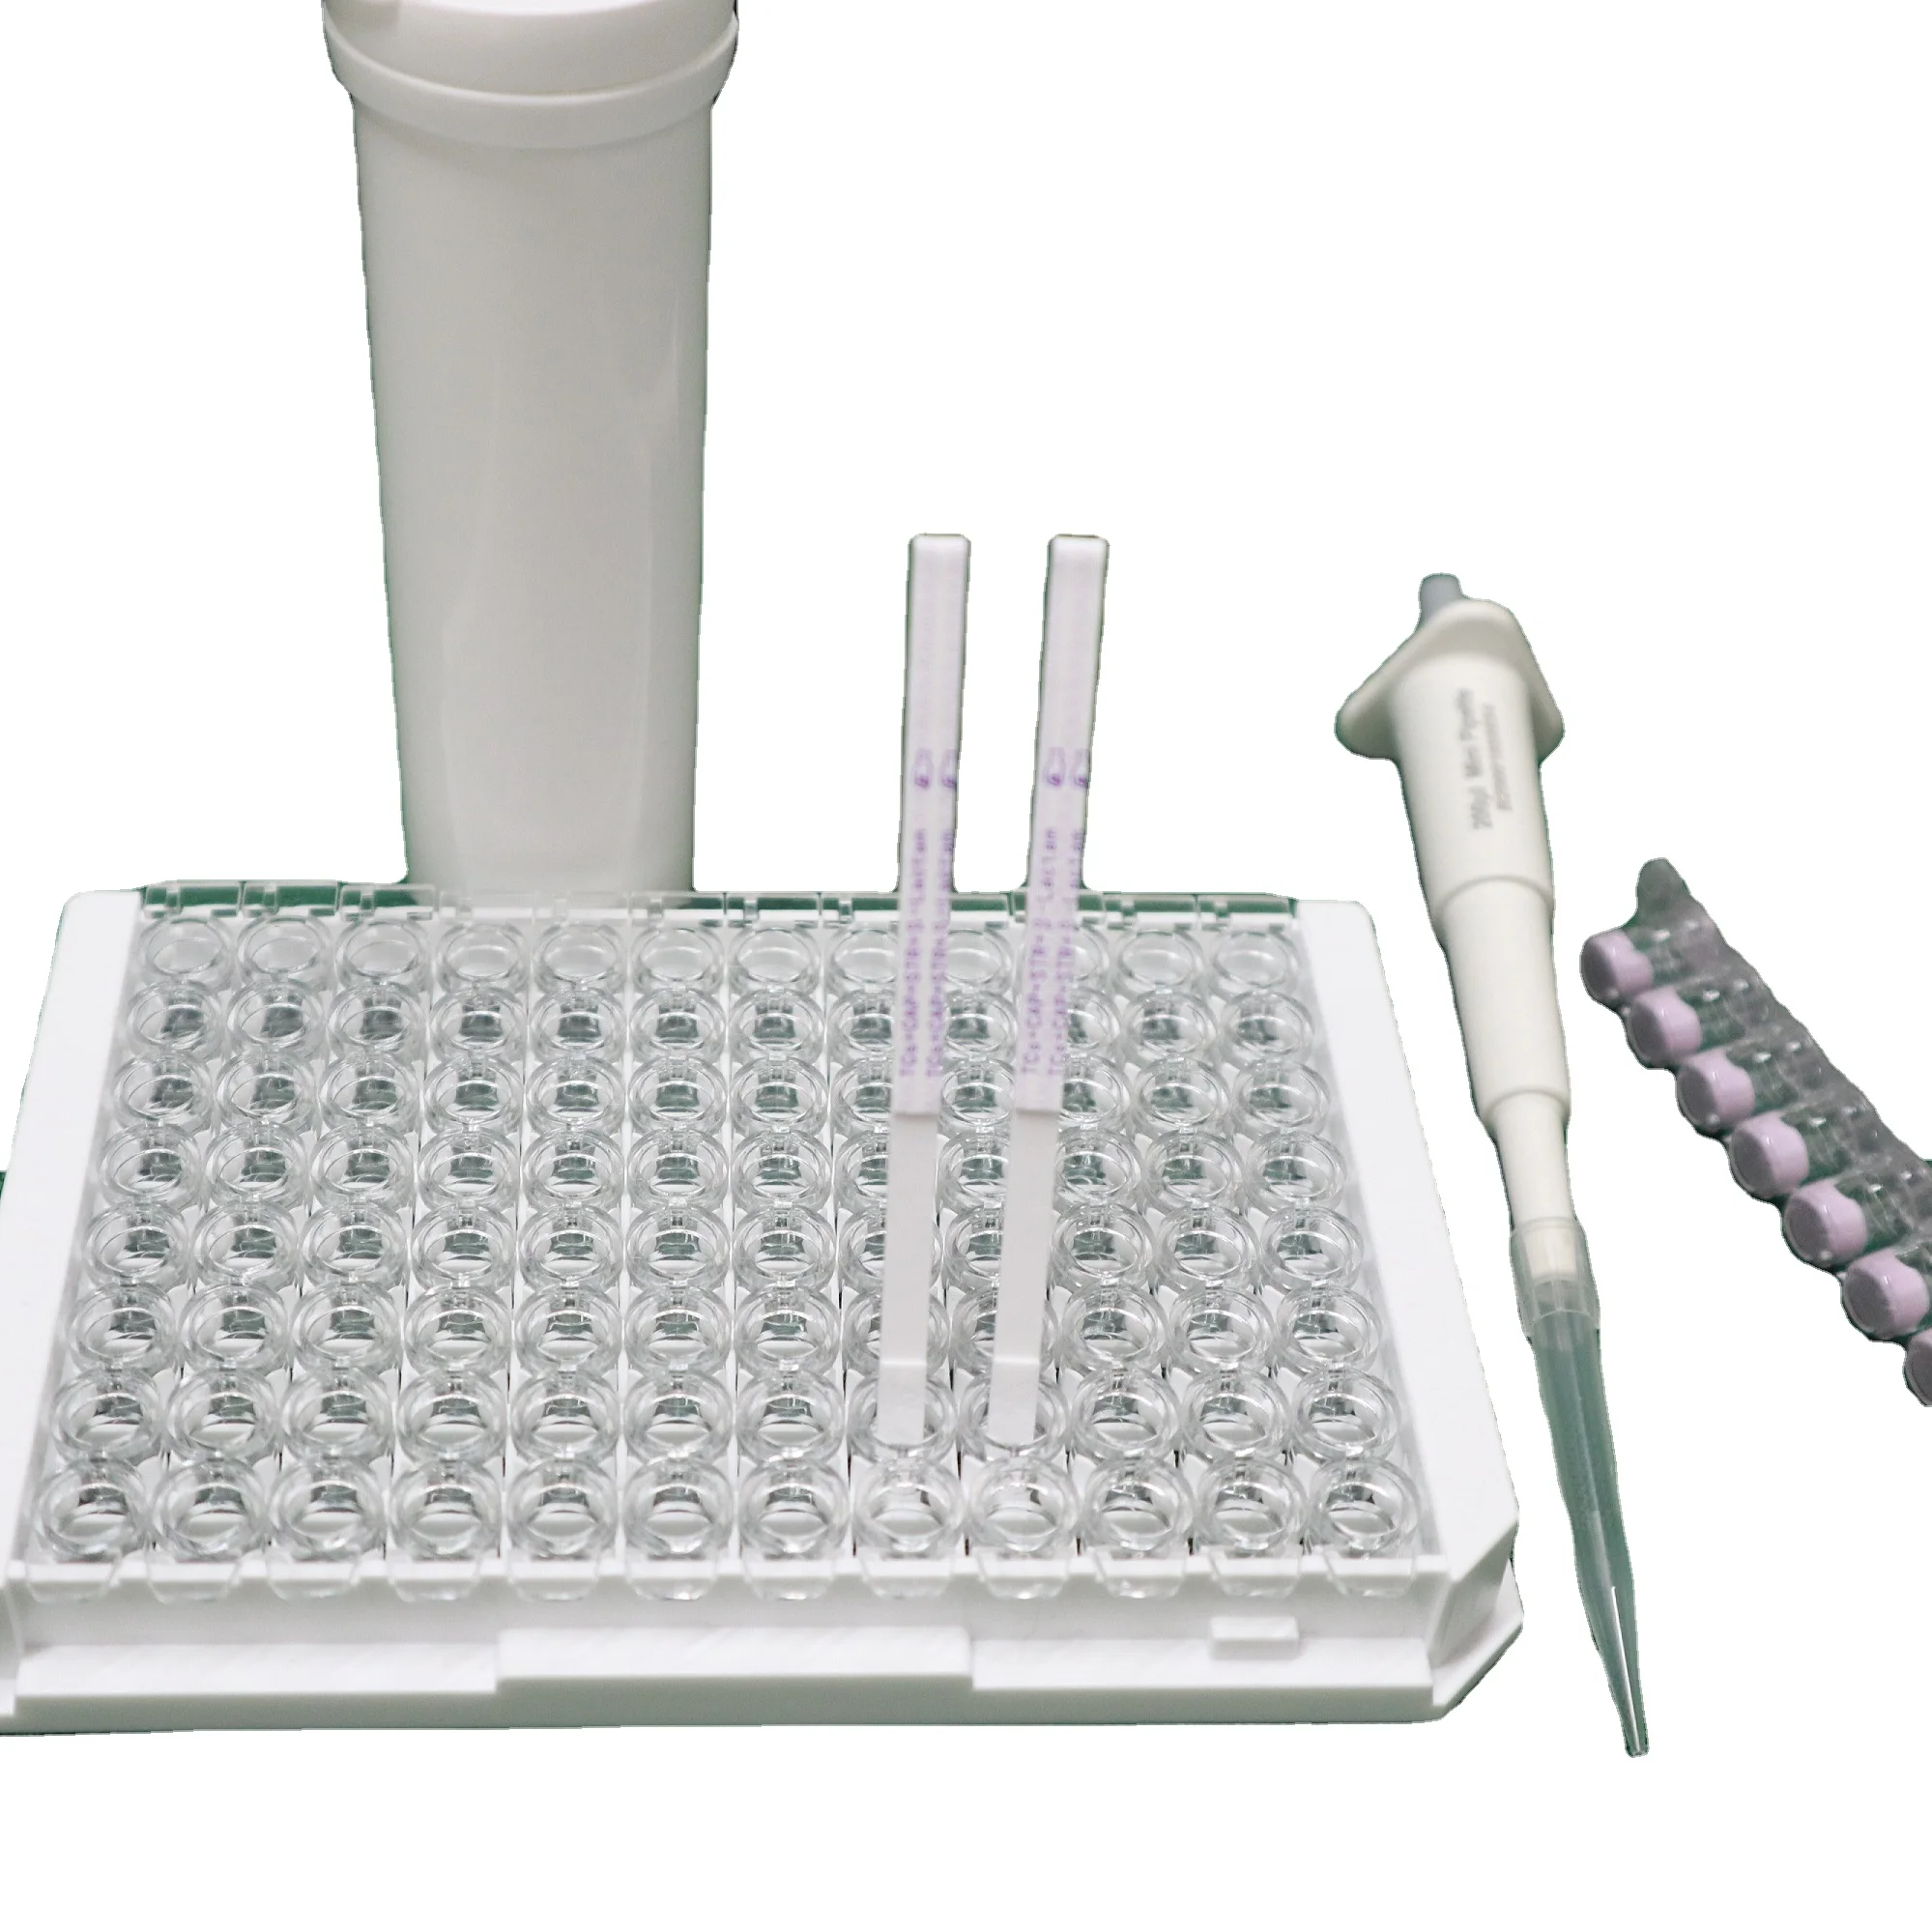 Verizimery антибиотический тест-полоска для испытания на остатки лекарственного средства, чувствительный боковой поток тетрациклинов в сыром молоке